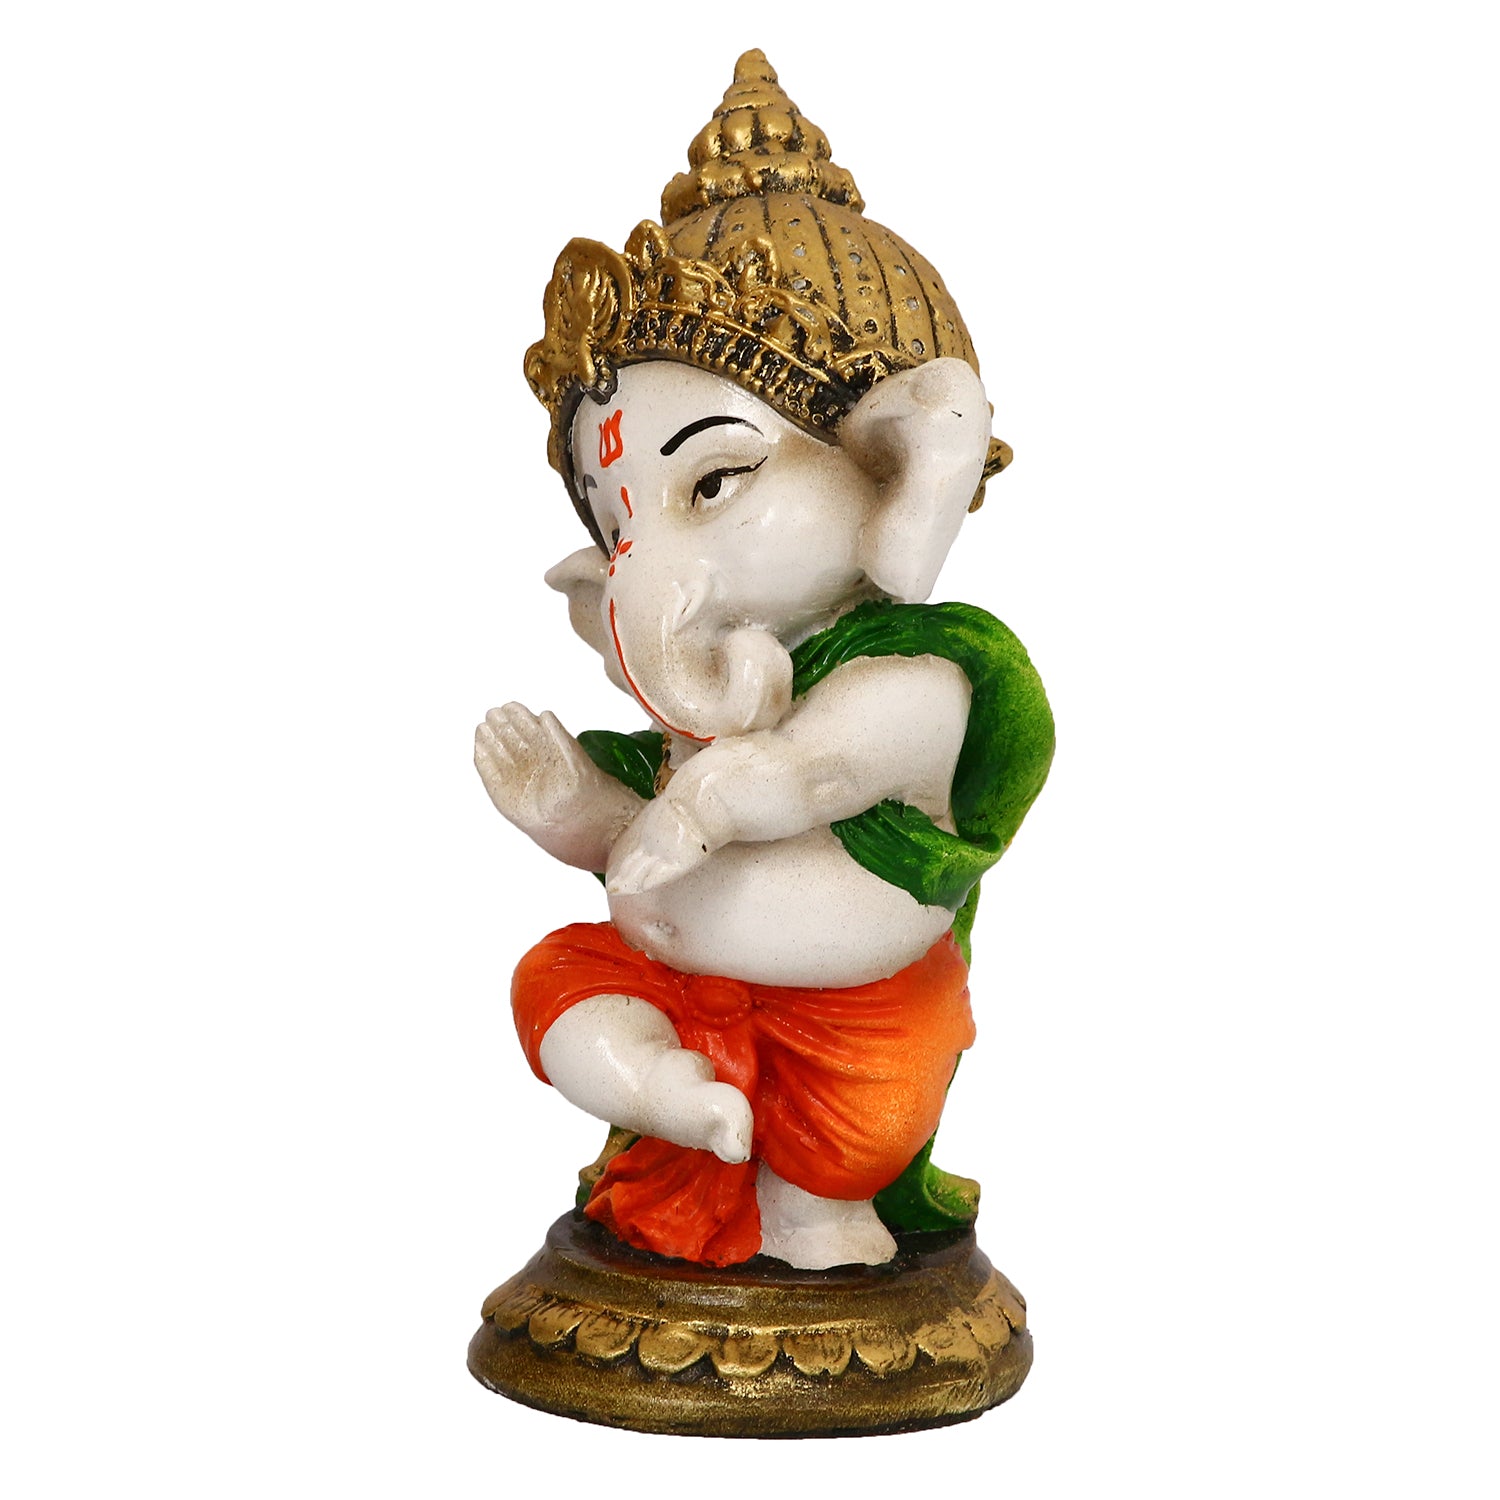 Lord Ganesha Idol In Dancing Avatar Decorative Showpiece 5